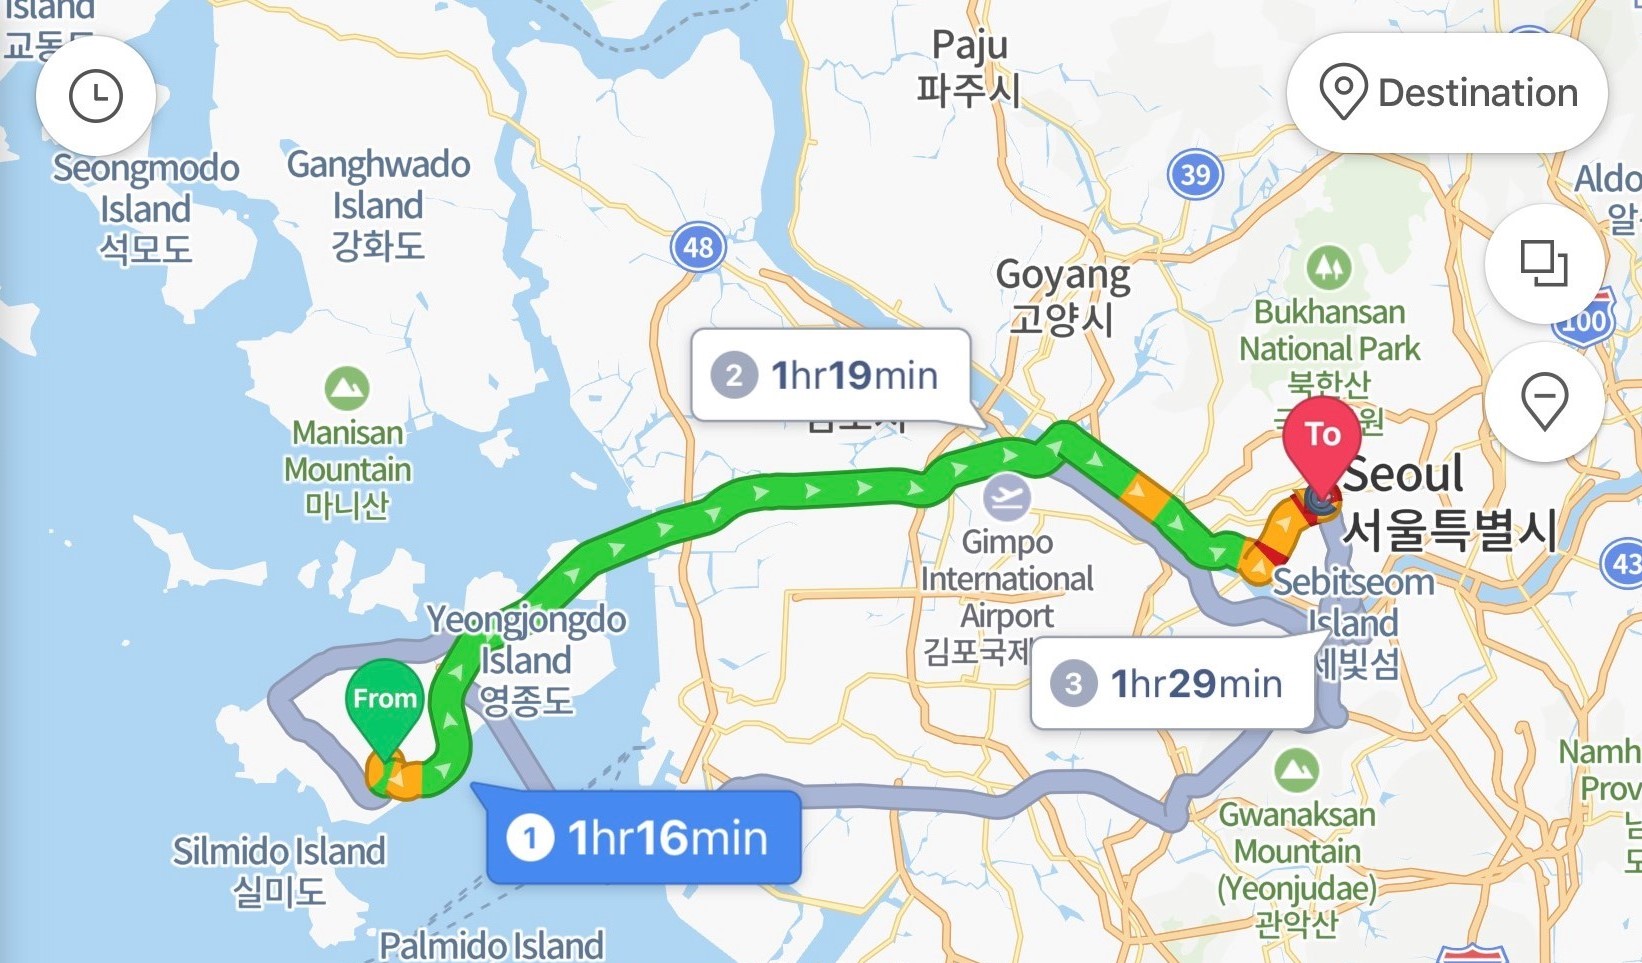 Thời gian di chuyển từ sân bay Incheon đến trung tâm Seoul khoảng 76 phút